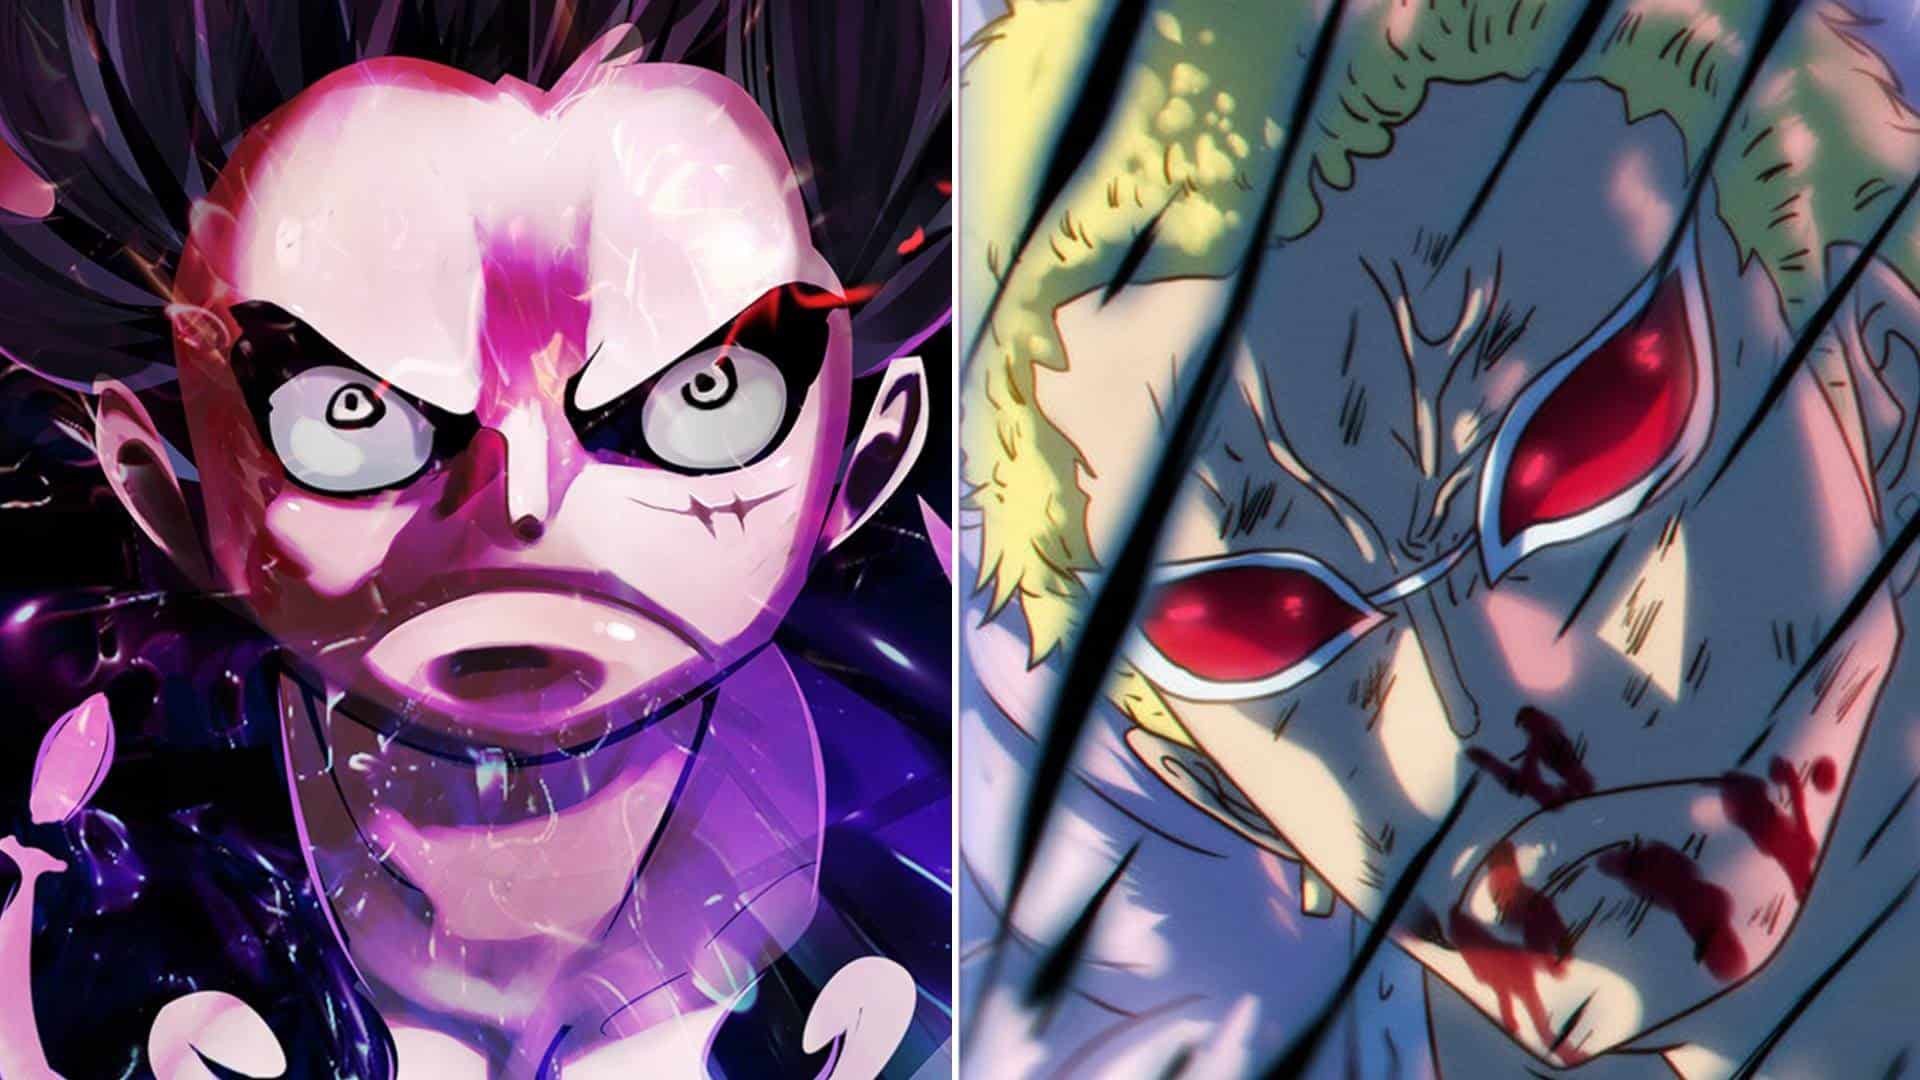 So sánh là cách để chúng ta thấy rõ những khả năng và sức mạnh của nhân vật trong One Piece. Hãy xem hình ảnh liên quan để so sánh sức mạnh của các nhân vật và đánh giá khả năng chiến đấu của họ.